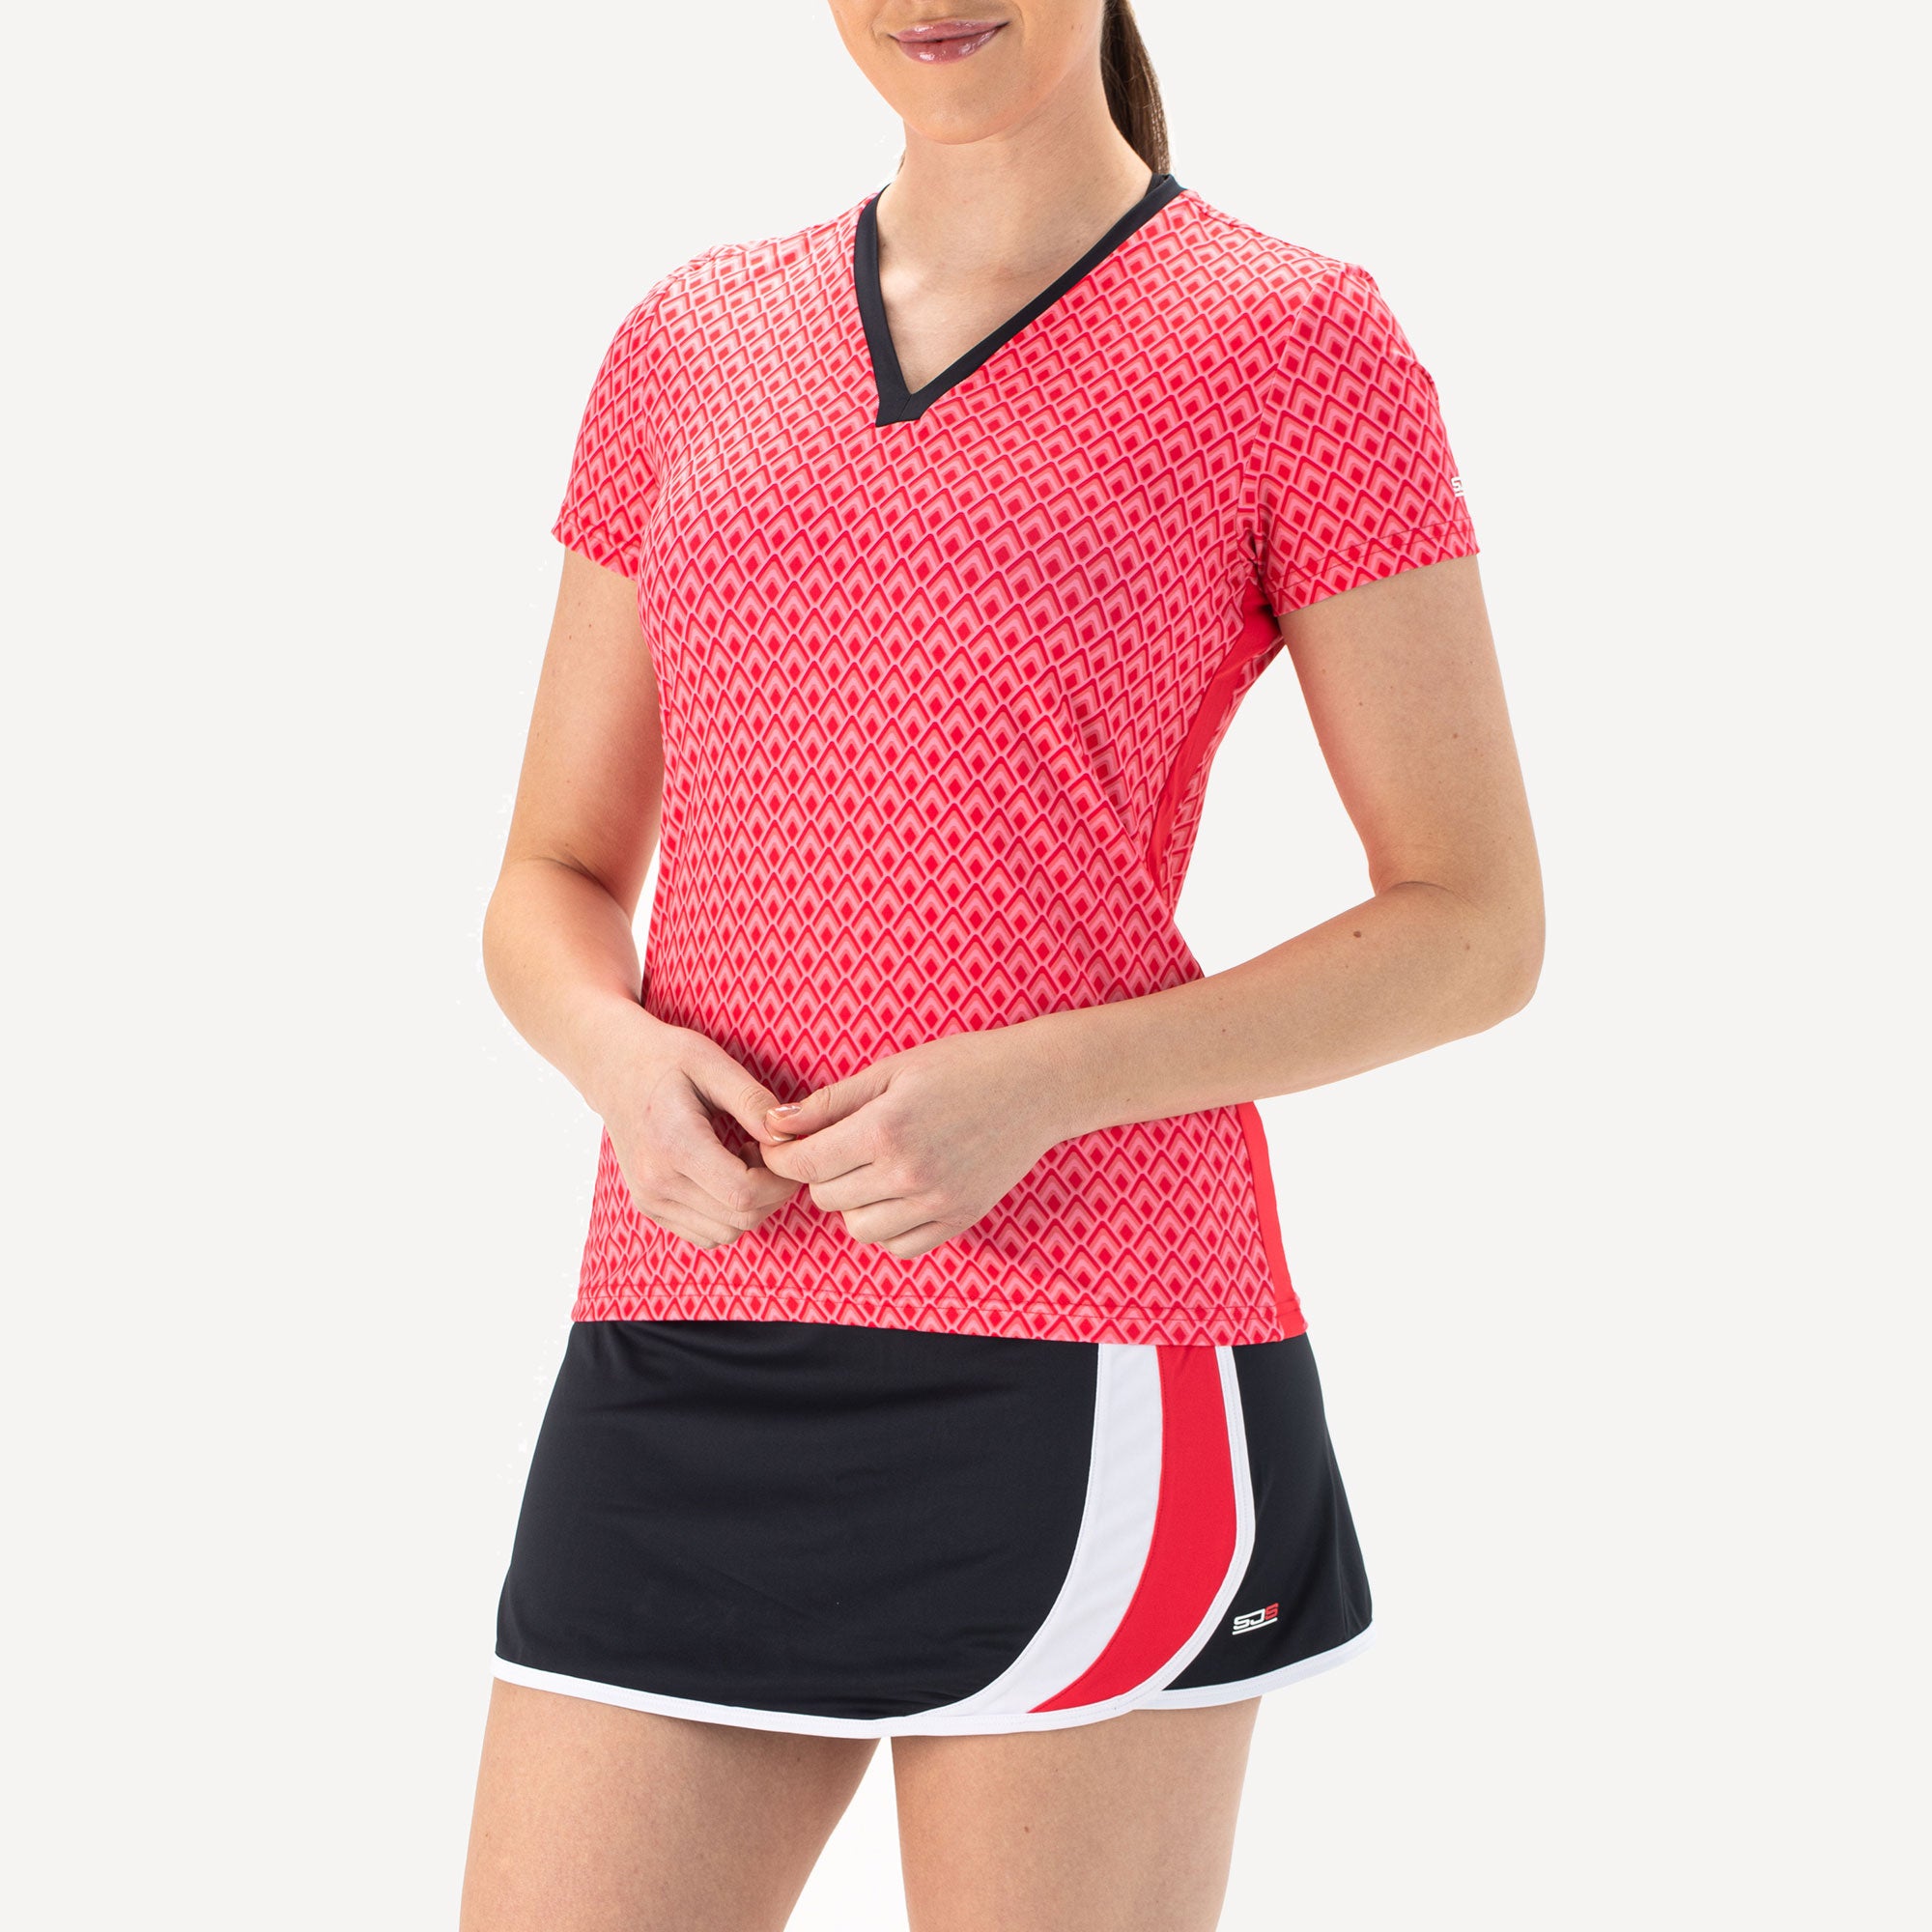 Sjeng Sports Inge Women's Tennis Shirt - Red (1)